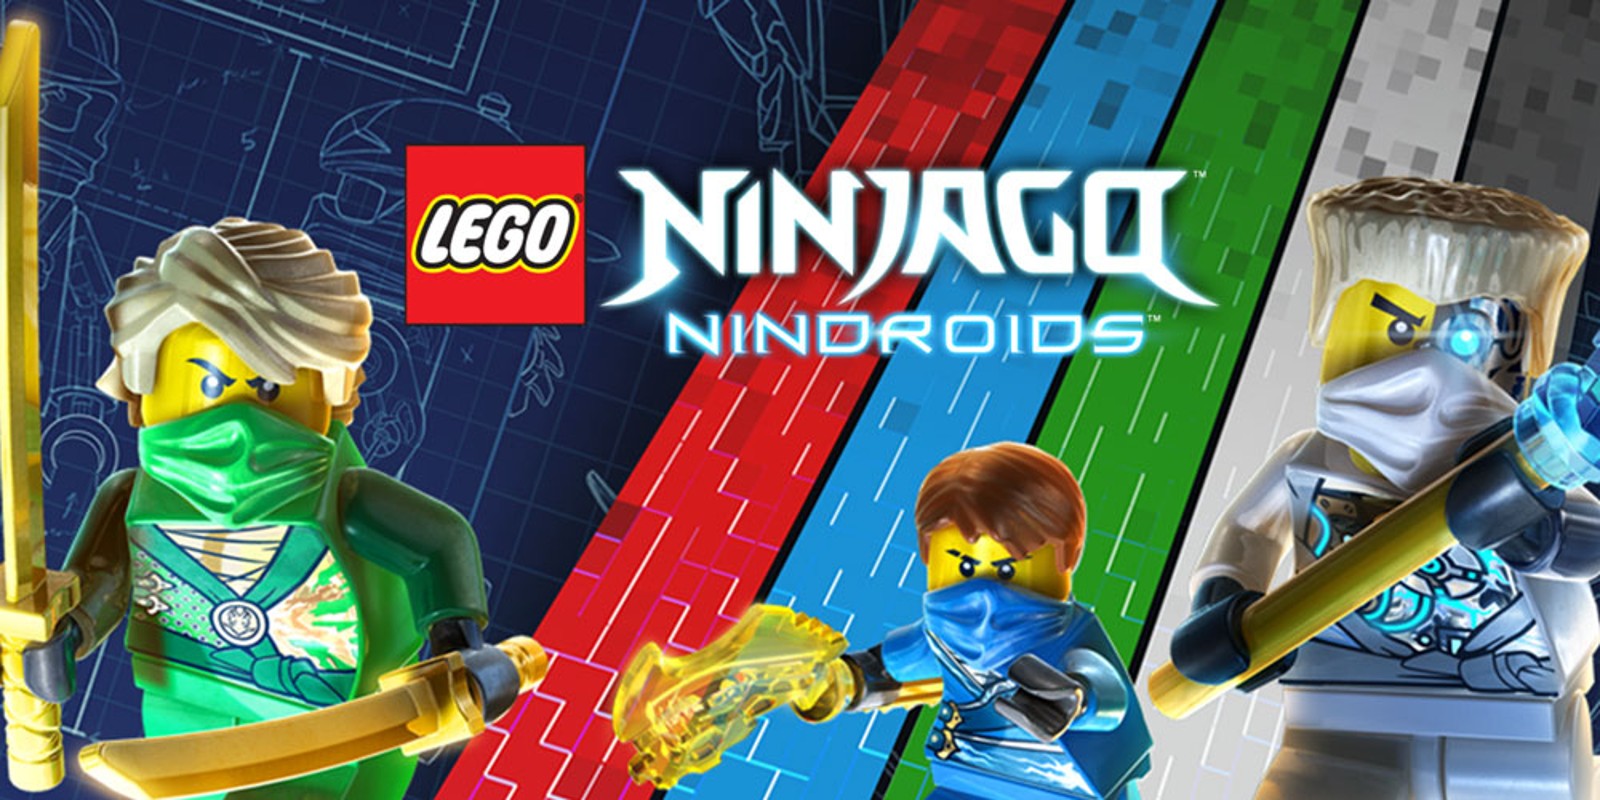 LEGO® Ninjago™: Nindroids™